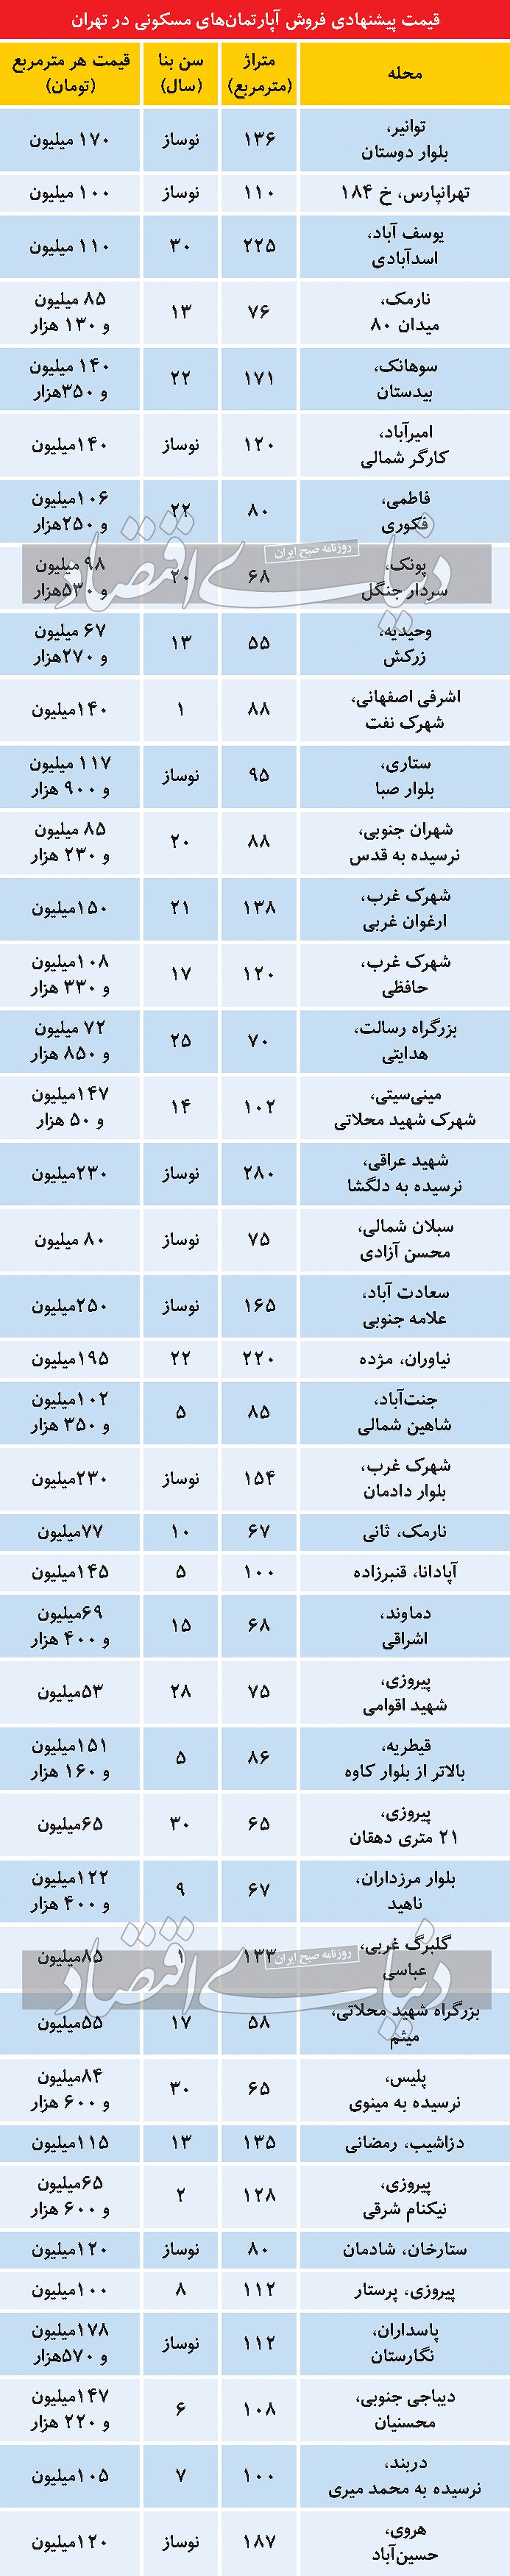 بررسی قیمت آپارتمان های تهران از دربند تا پیروزی + جدول